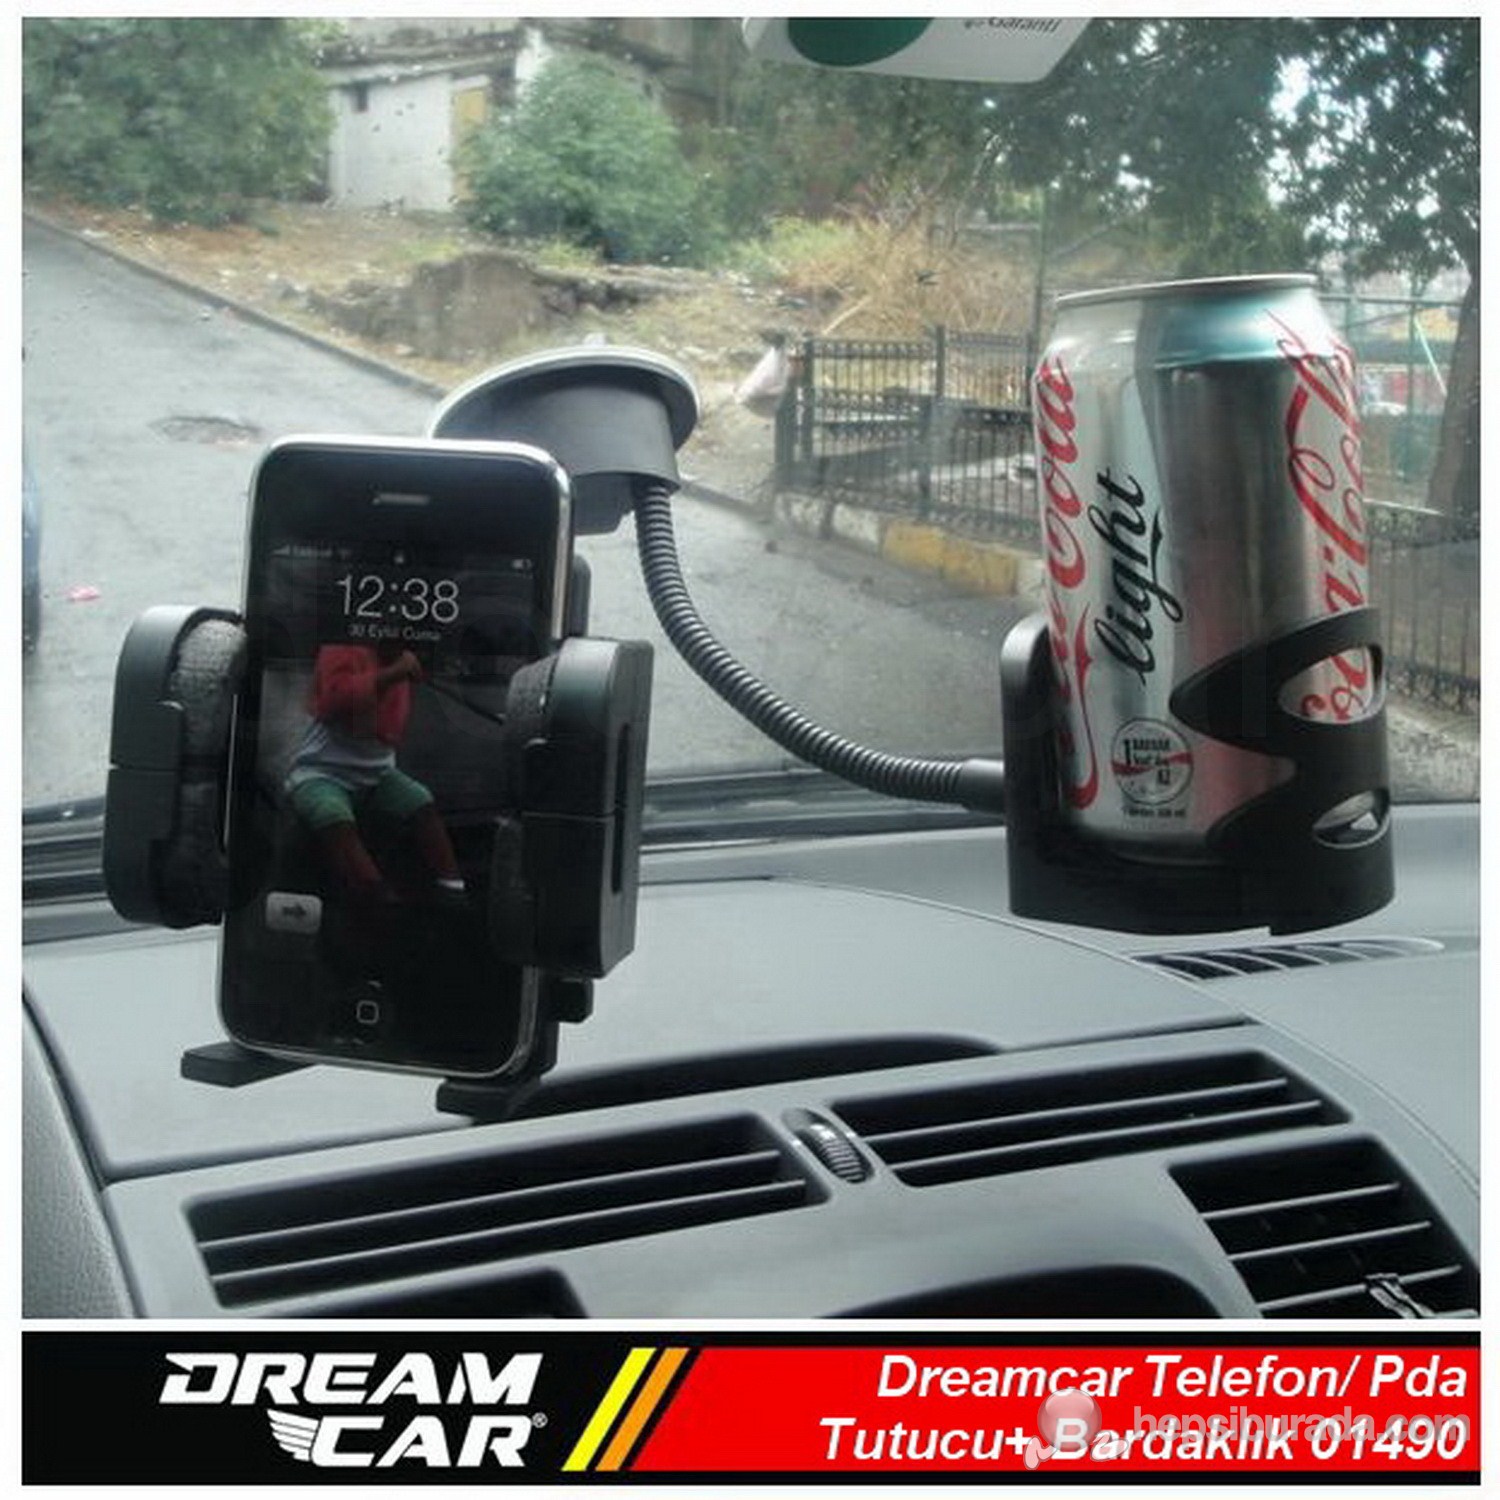 Dreamcar Pda/Telefon/Navigasyon Tutucu+ Bardaklık Spralli Vantuzlu/Kalorifer Aparatlı 01490